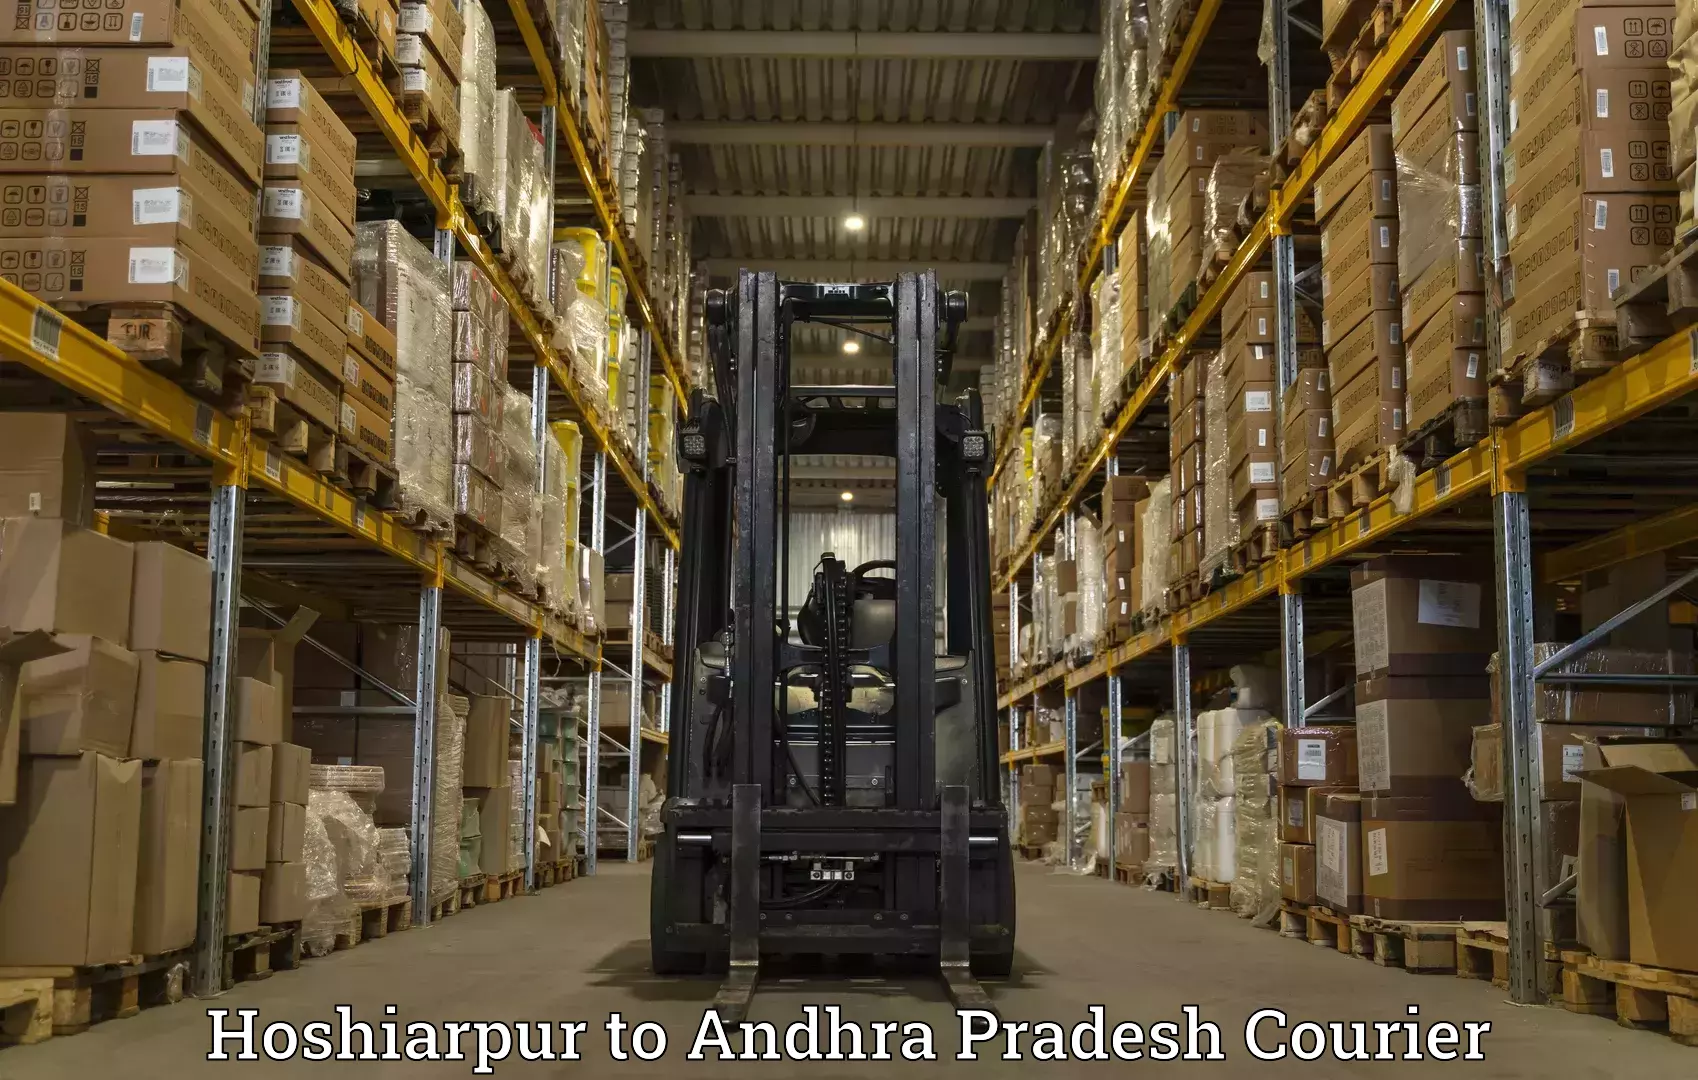 Premium courier solutions Hoshiarpur to Pedapadu